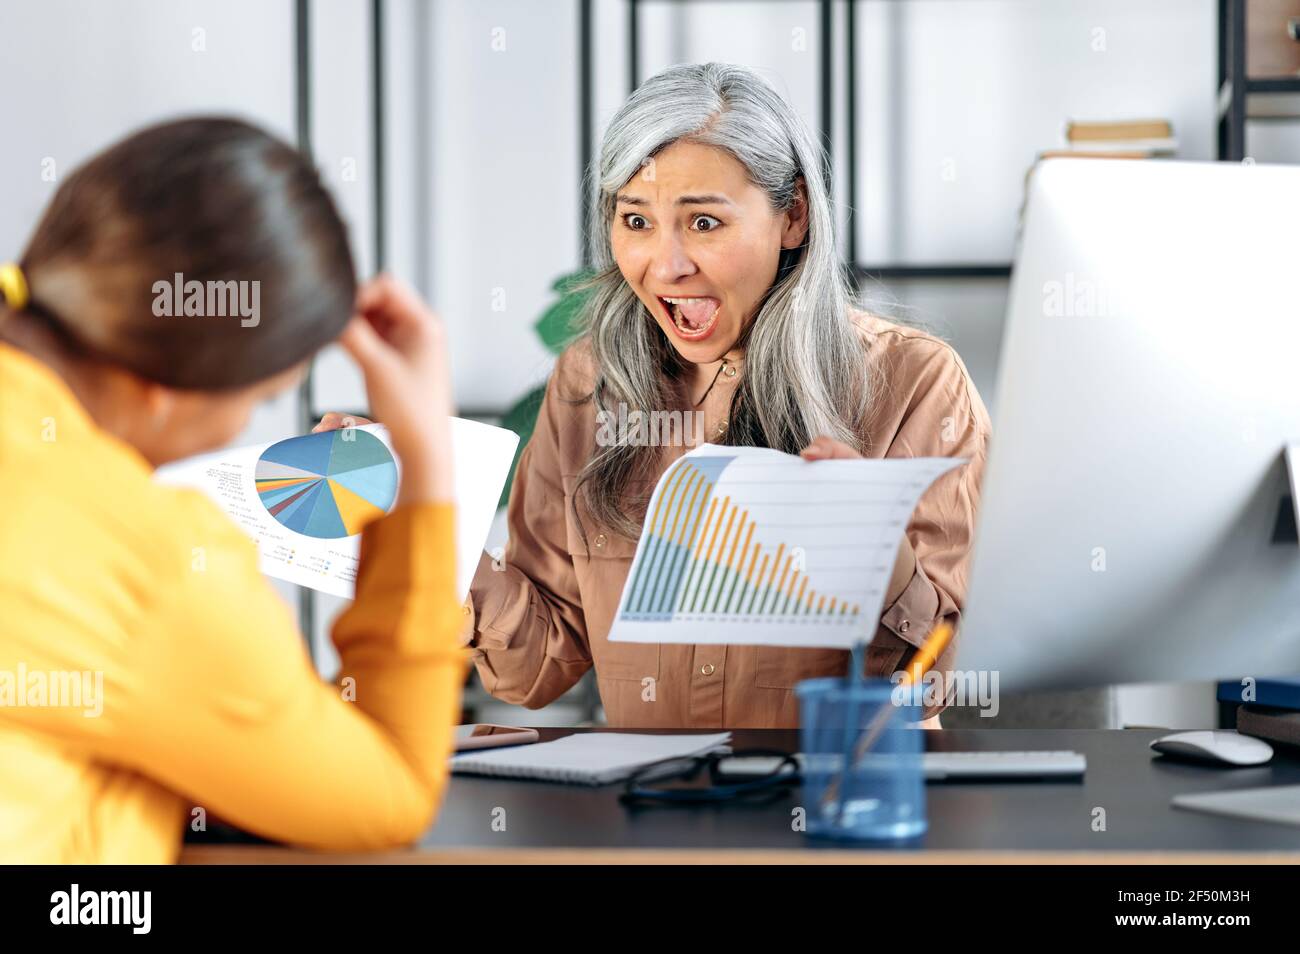 Agacée en colère mécontente femme asiatique mûre à cheveux gris, chef d'une employée, gestionnaire, dans son bureau, se moque et crie à un subordonné, montre une erreur dans un rapport, des gestes avec ses mains Banque D'Images